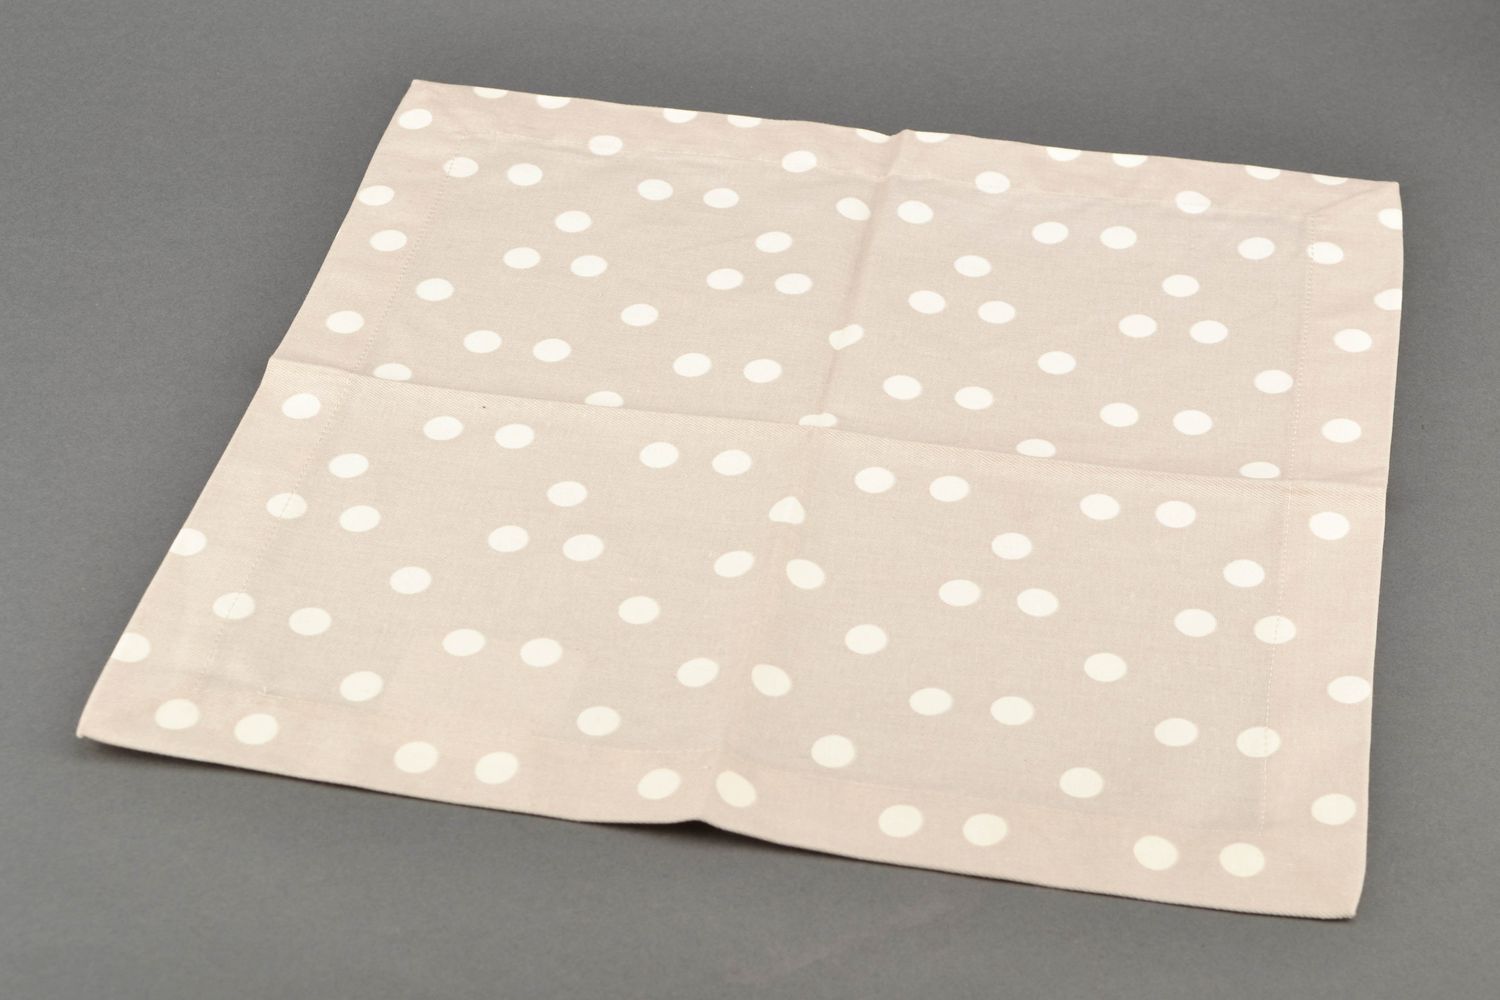 Polka dot fabric kitchen napkin photo 4